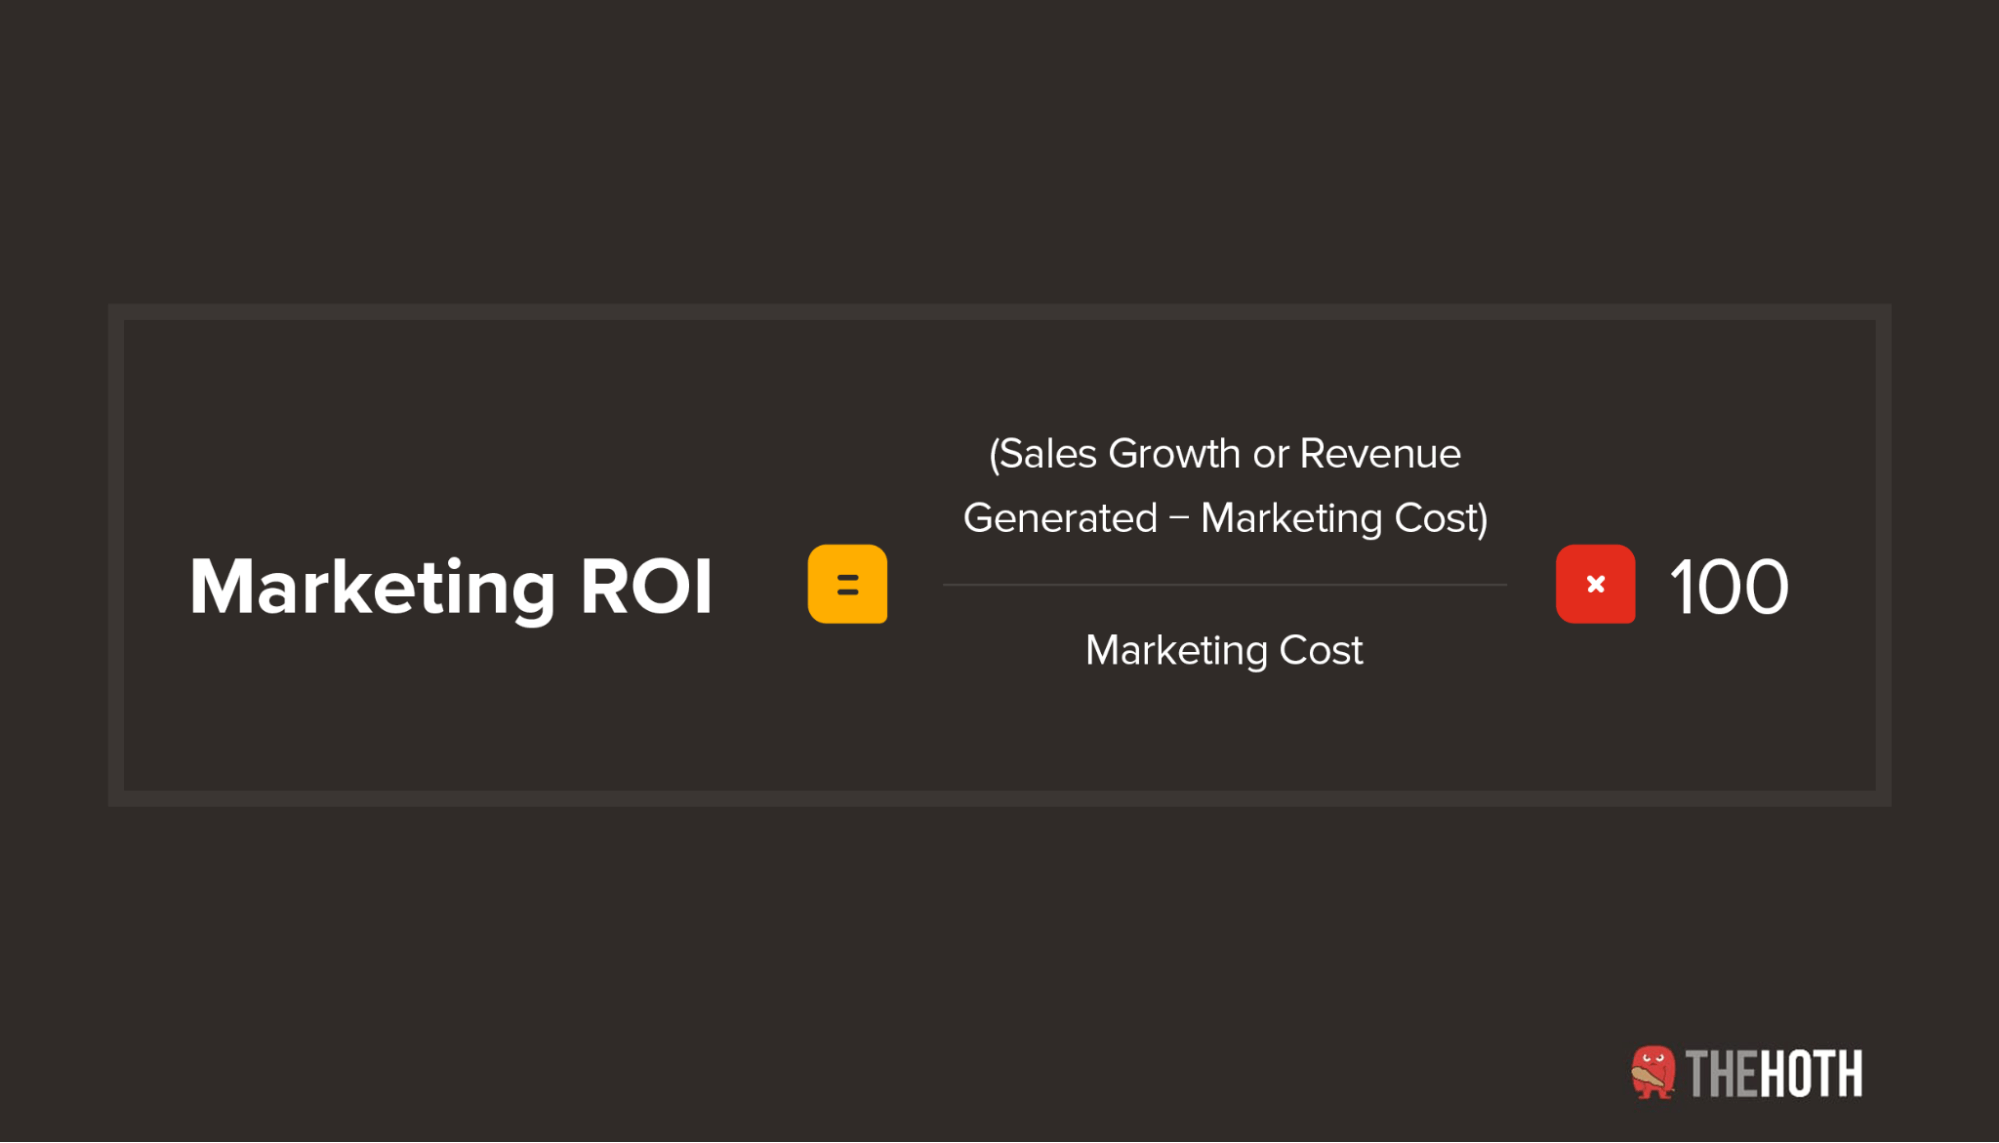 The basic marketing ROI formula